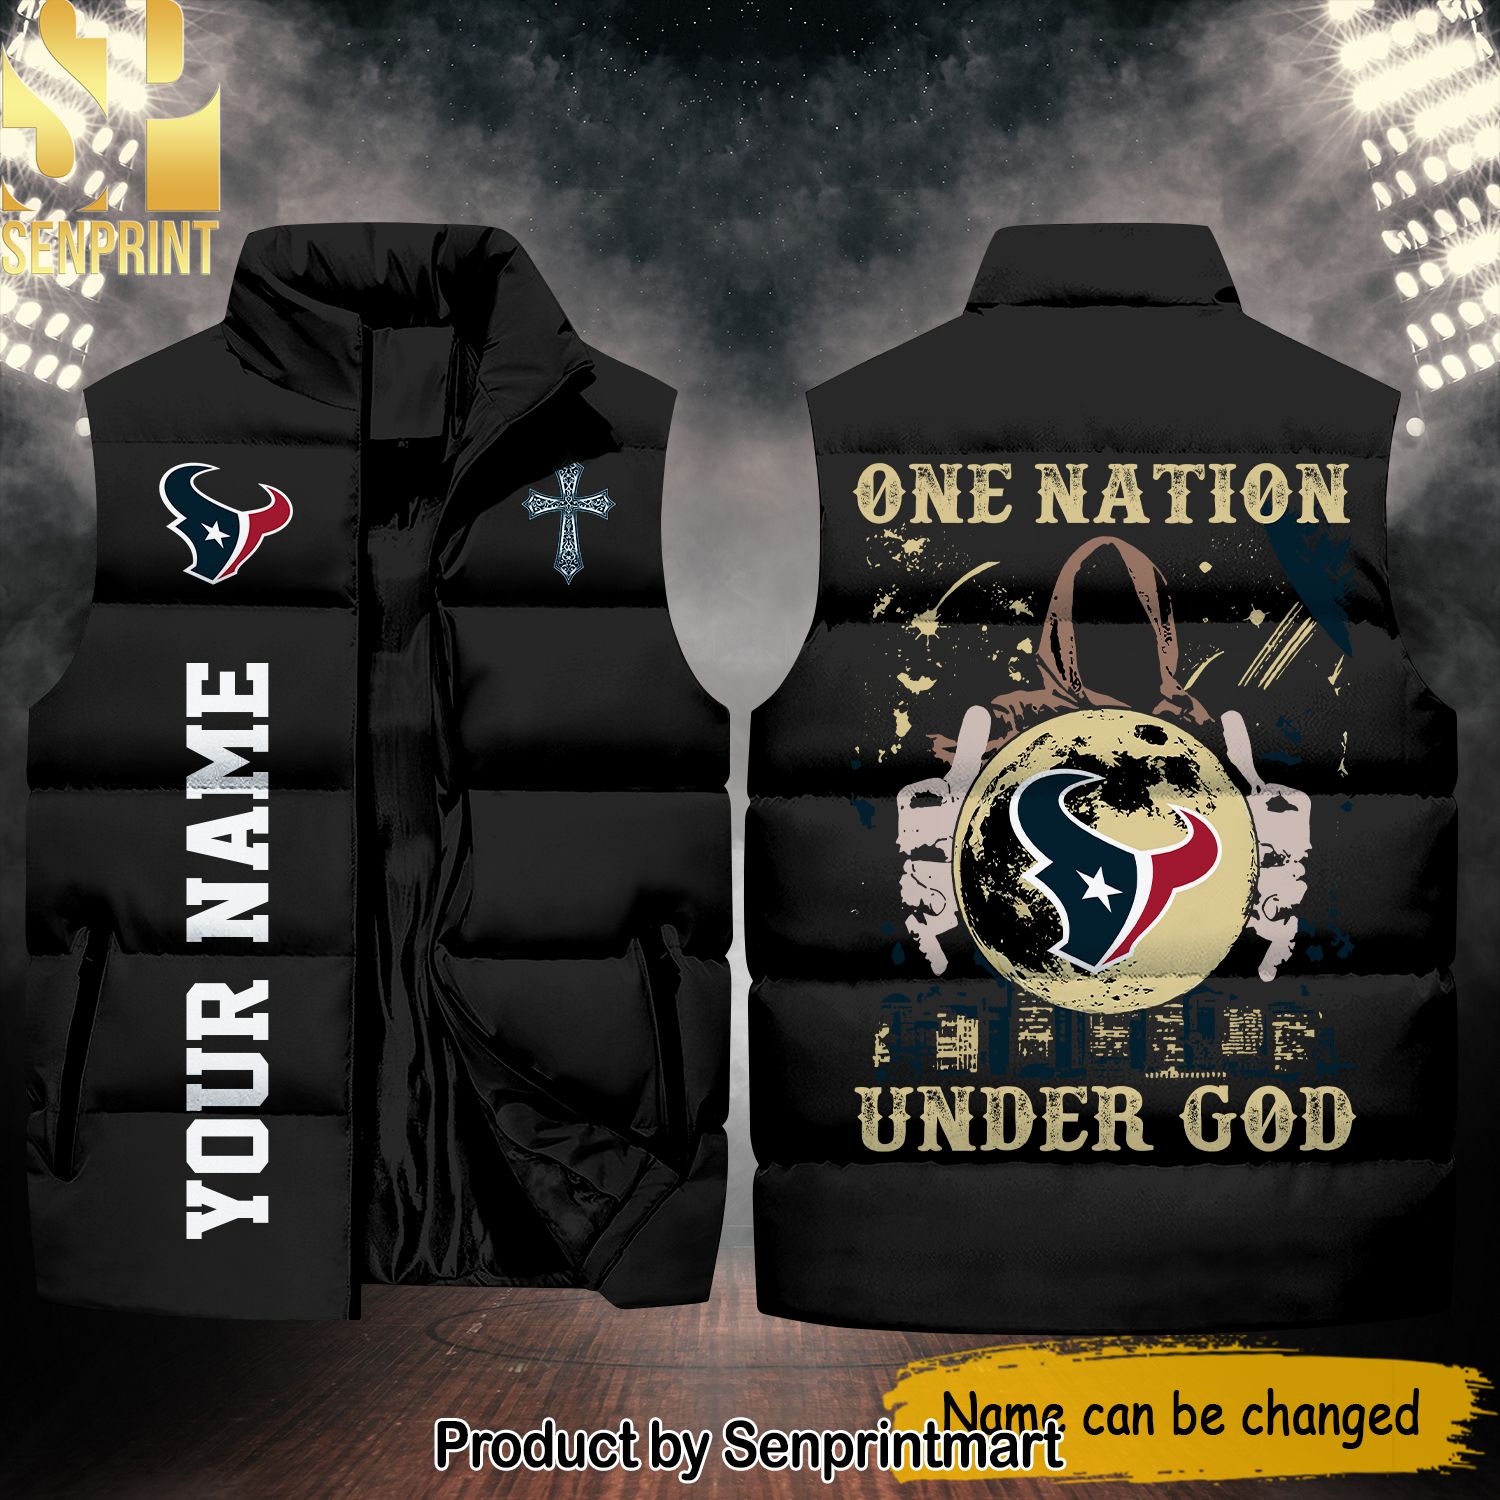 National Football League Houston Texans One Nation Under God Hot Fashion Sleeveless Jacket